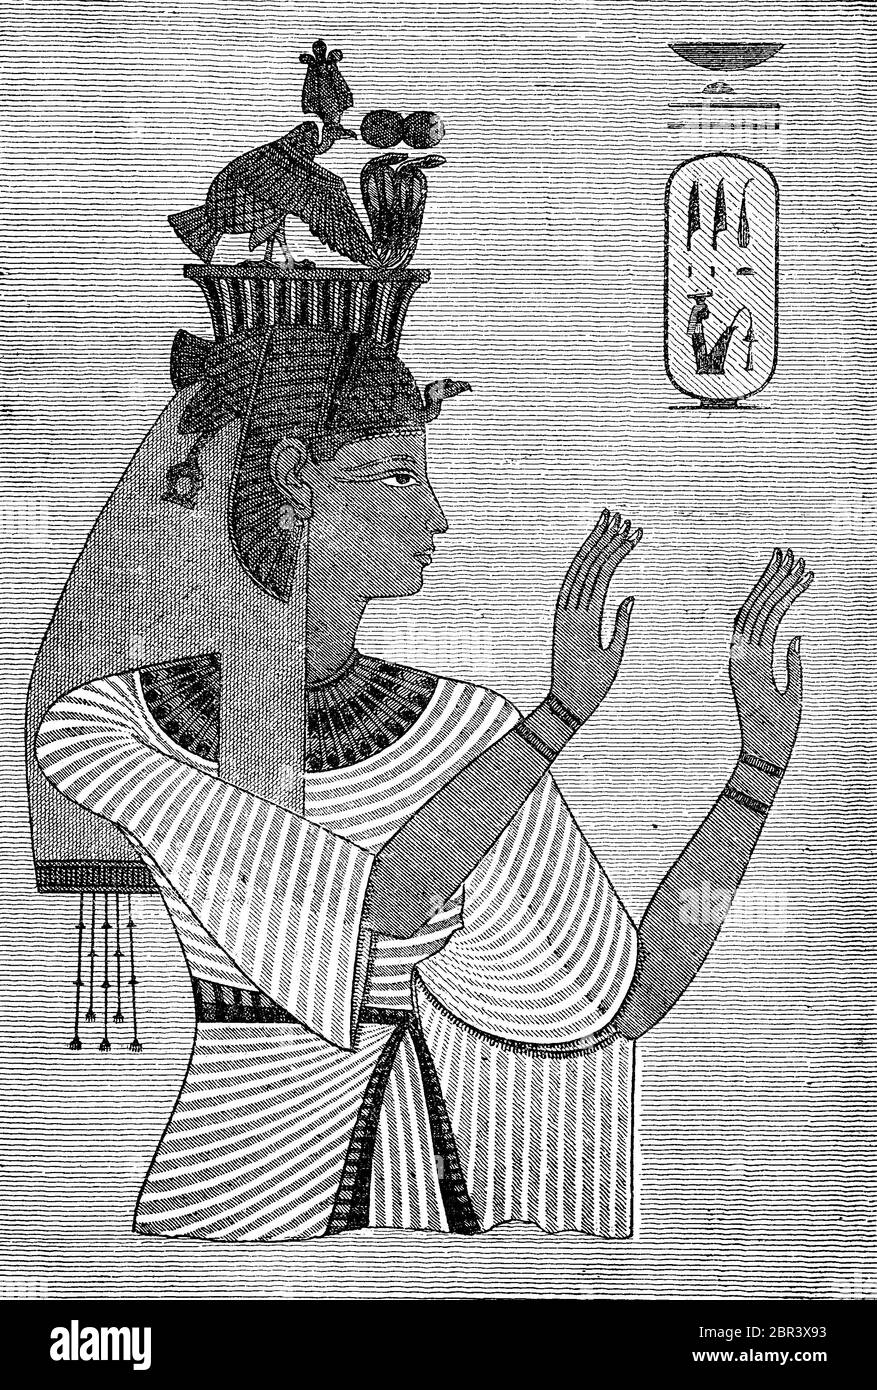 Tiye, V 1398. V. 1338 - Chr. Chr., war die große königliche Frau und de facto Mitherrscher des ägyptischen pharao Amenhotep III, Ägypten / Teje, 1398 v. Chr. - 1338 v. Chr., war die große königliche Gemahlin und de facto Mitregentin des ägyptischen Pharaos Amenophis III, Ägypten, historisch, historisch, digital verbesserte Reproduktion eines Originals aus dem 19. Jahrhundert / digitale Reproduktion einer Originalvorlage aus dem 19. Jahrhundert, Stockfoto